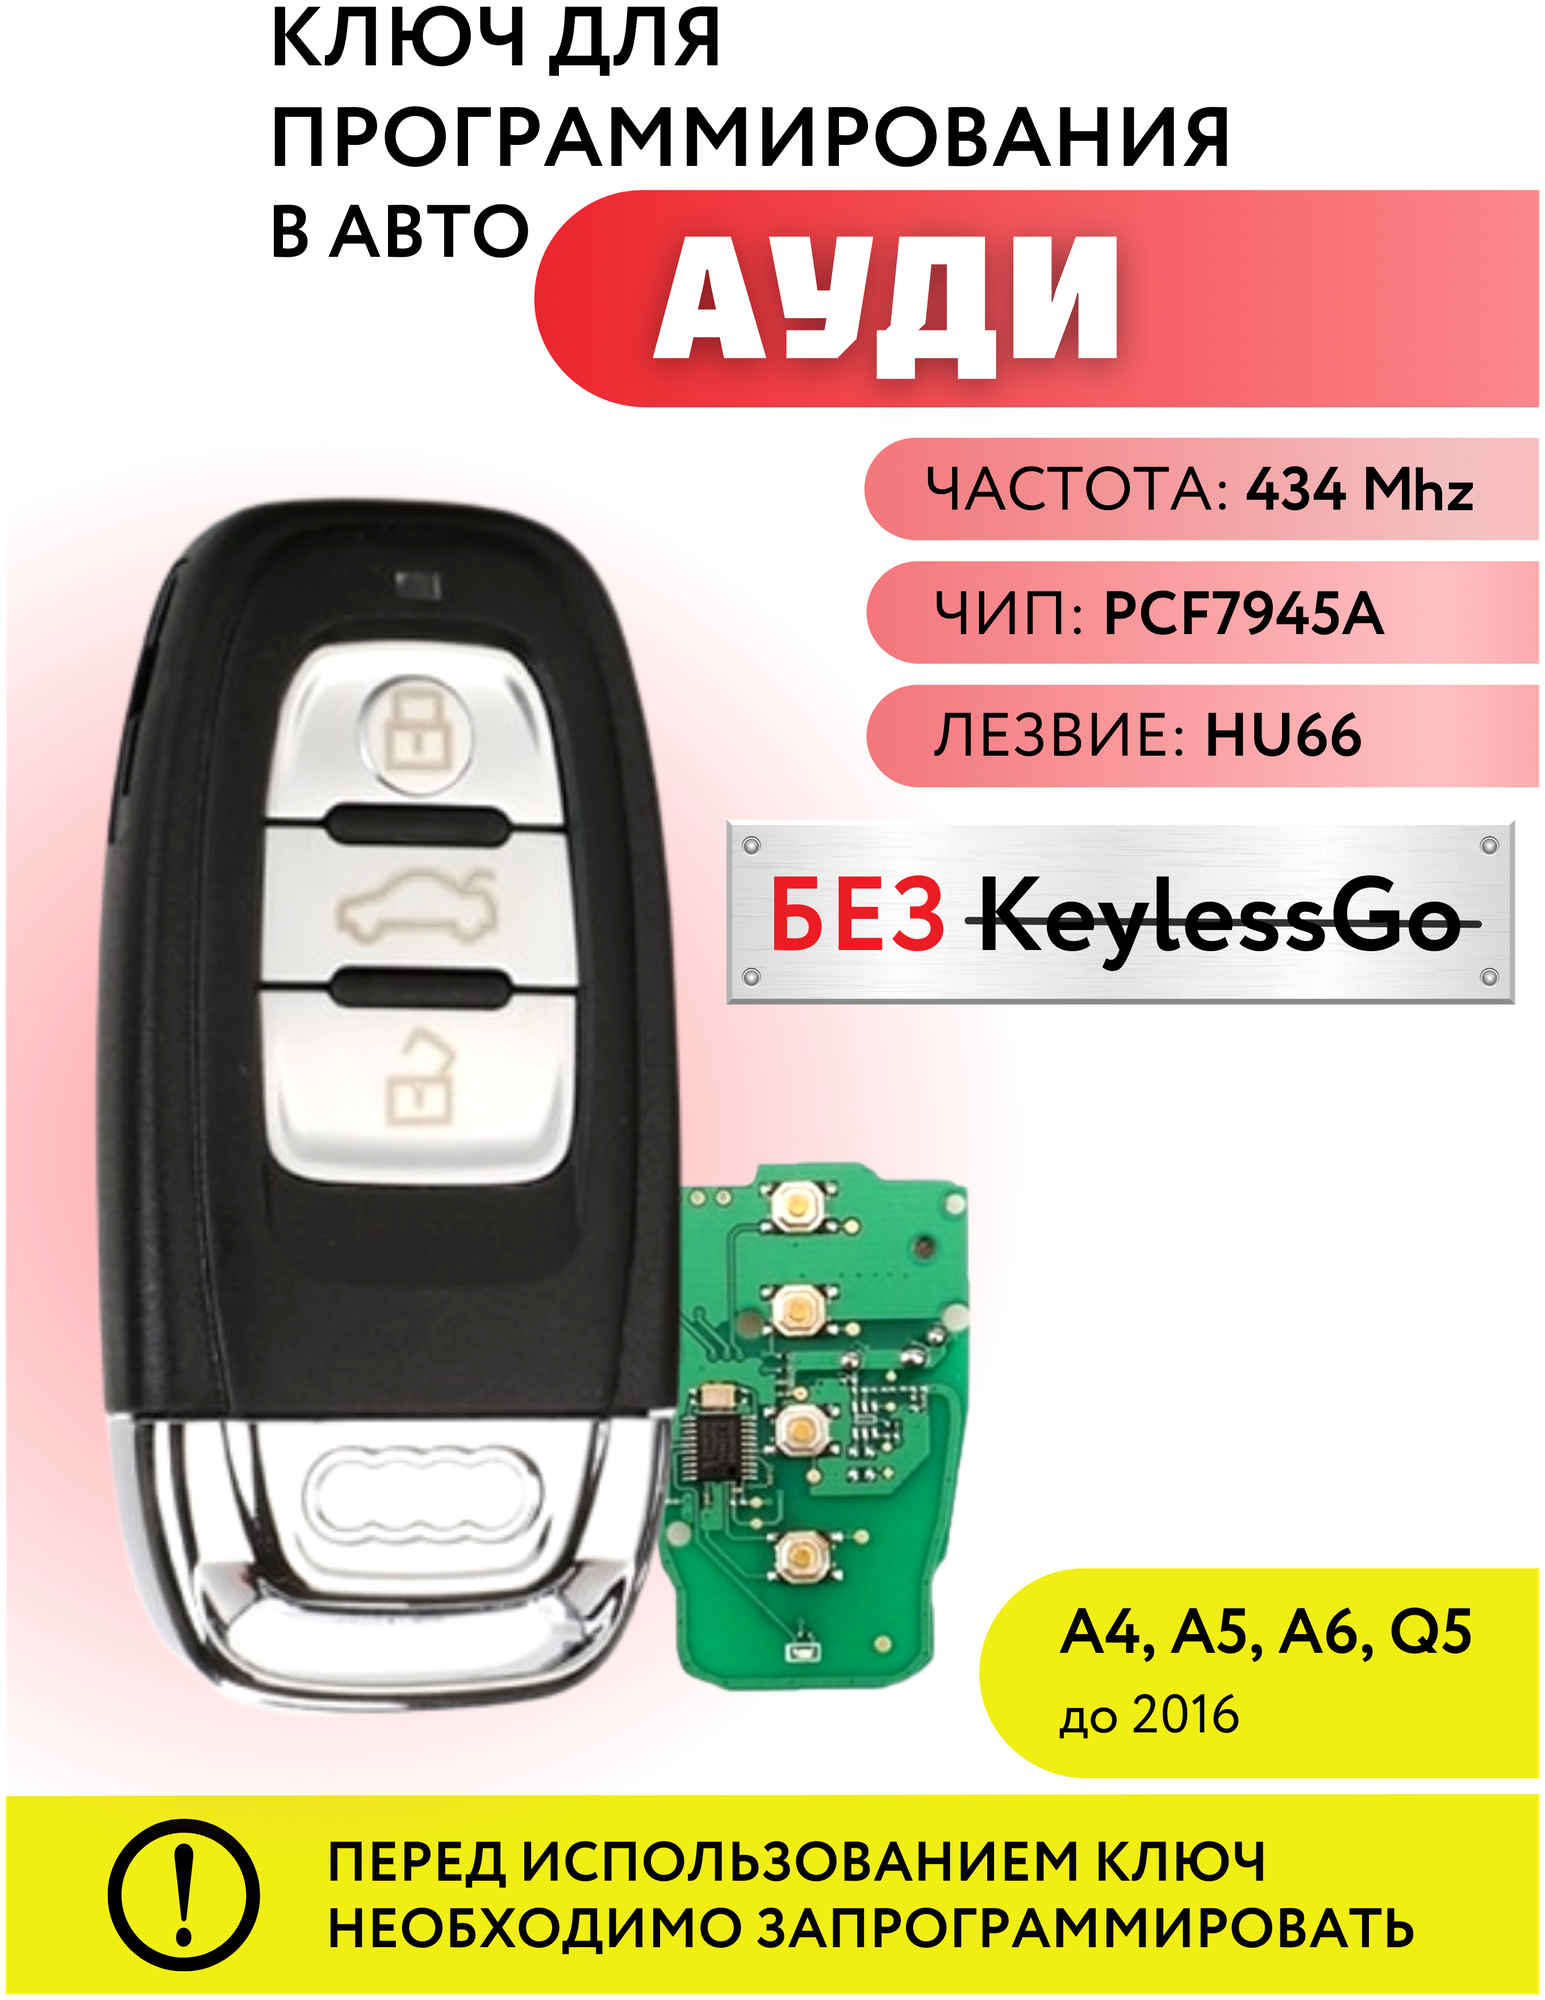 Ключ зажигания для Ауди A4, A5, A6, Q5, смарт ключ для Audi c платой и чипом, частота 434 Mhz